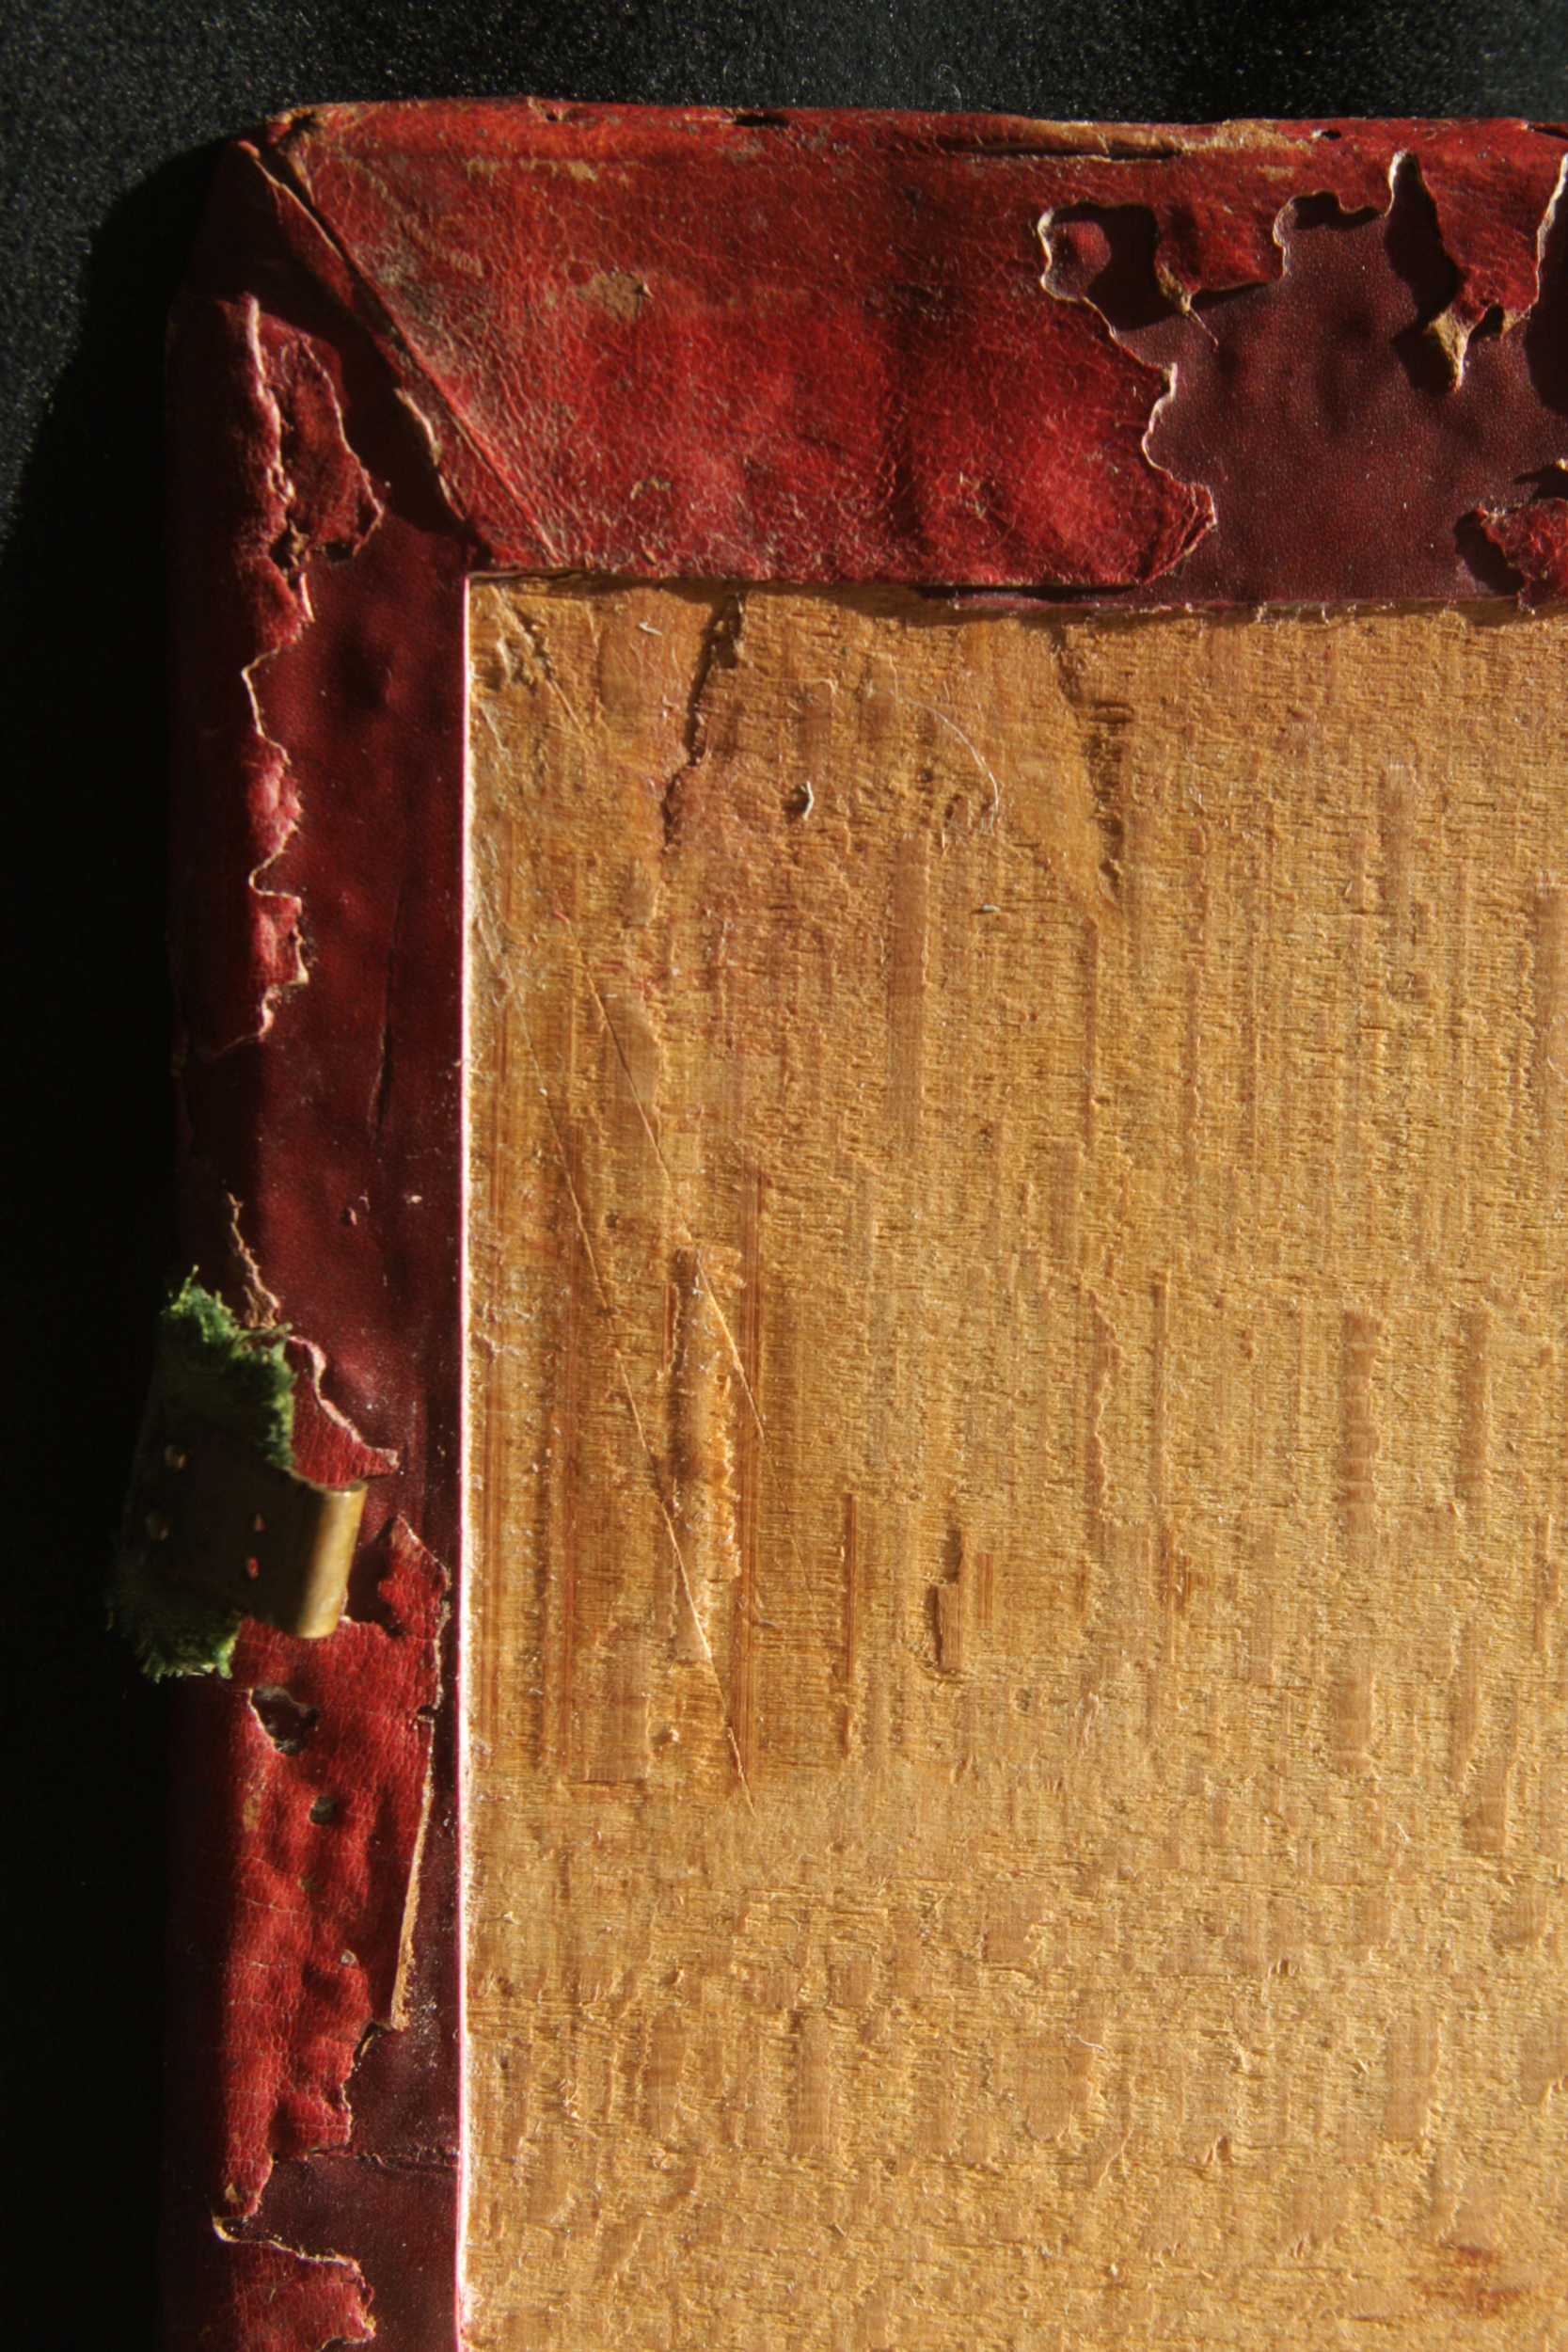 Az eredeti sarokkialakítás bevágott lehetett, melyről karcolásnyomok árulkodnak a tábla belsején